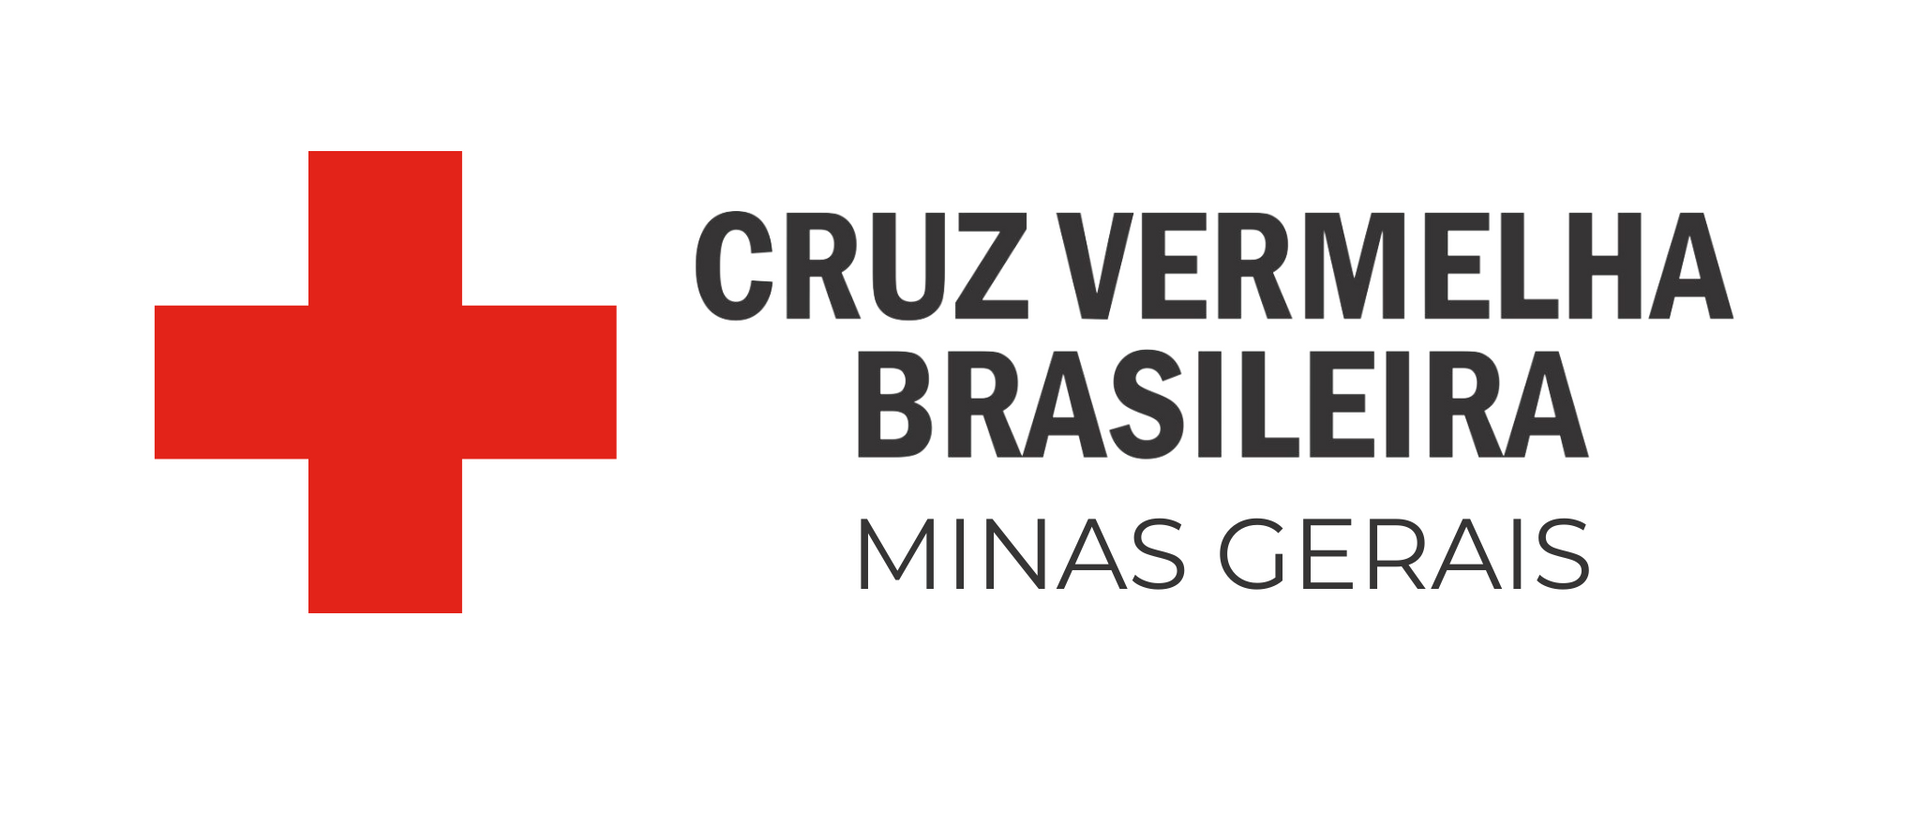 The logo for cruz vermelha brasileira minas gerais is a red cross.